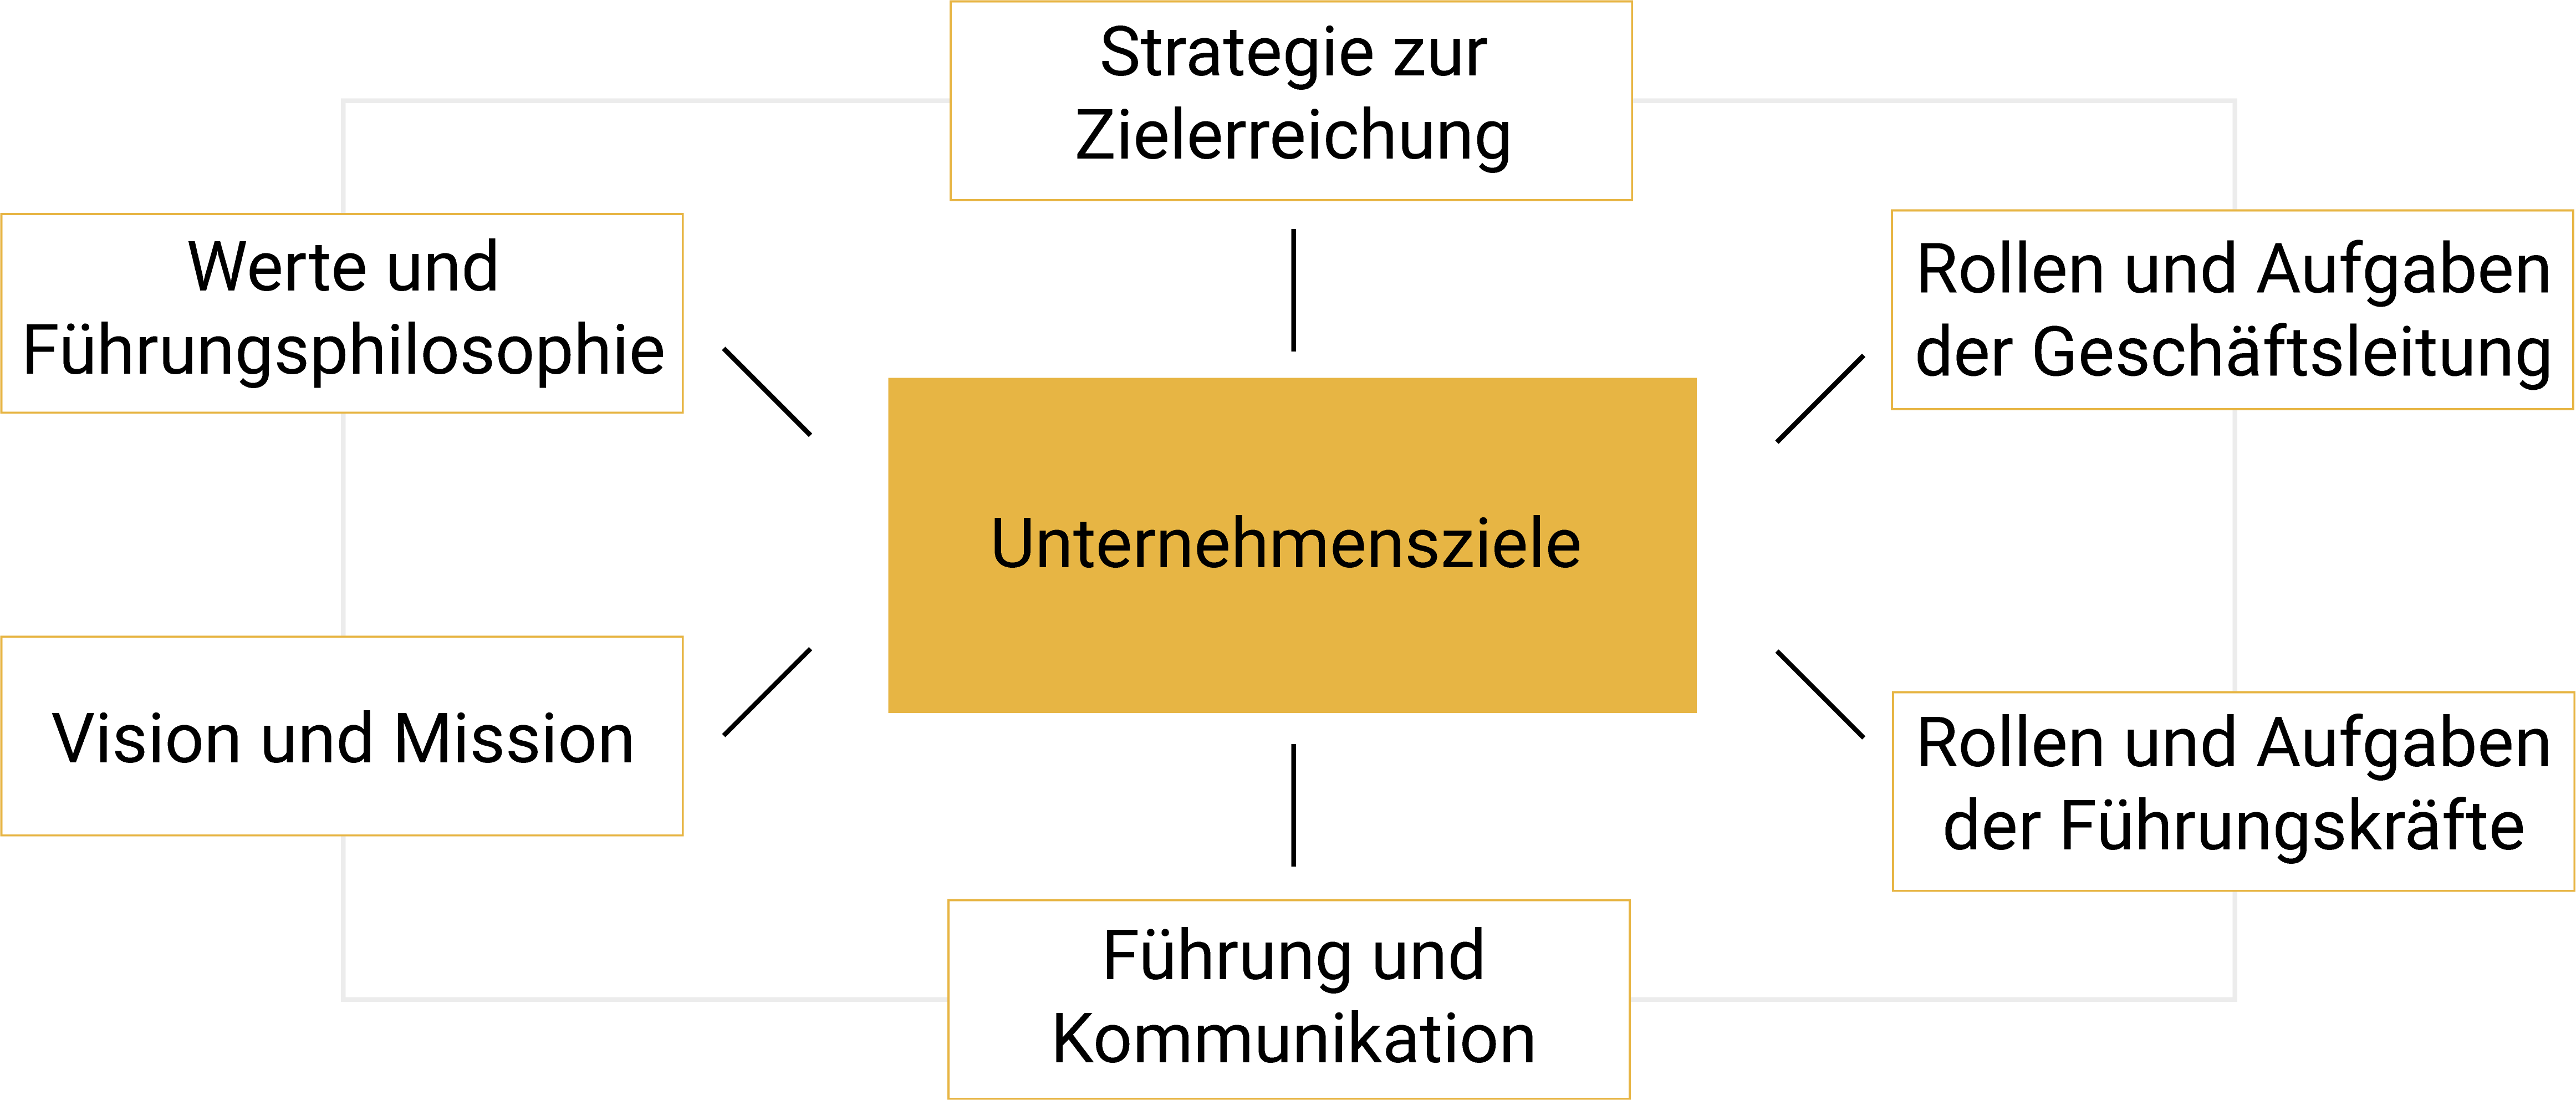 Unternehmensziele Grafik: Strategie zur Zielerreichung, Rollen und Aufgaben der Geschäftsleitung, Rollen und Aufgaben der Führungskräfte, Führung und Kommunikation, Vision und Mission, Werte und Führungsphilosophie